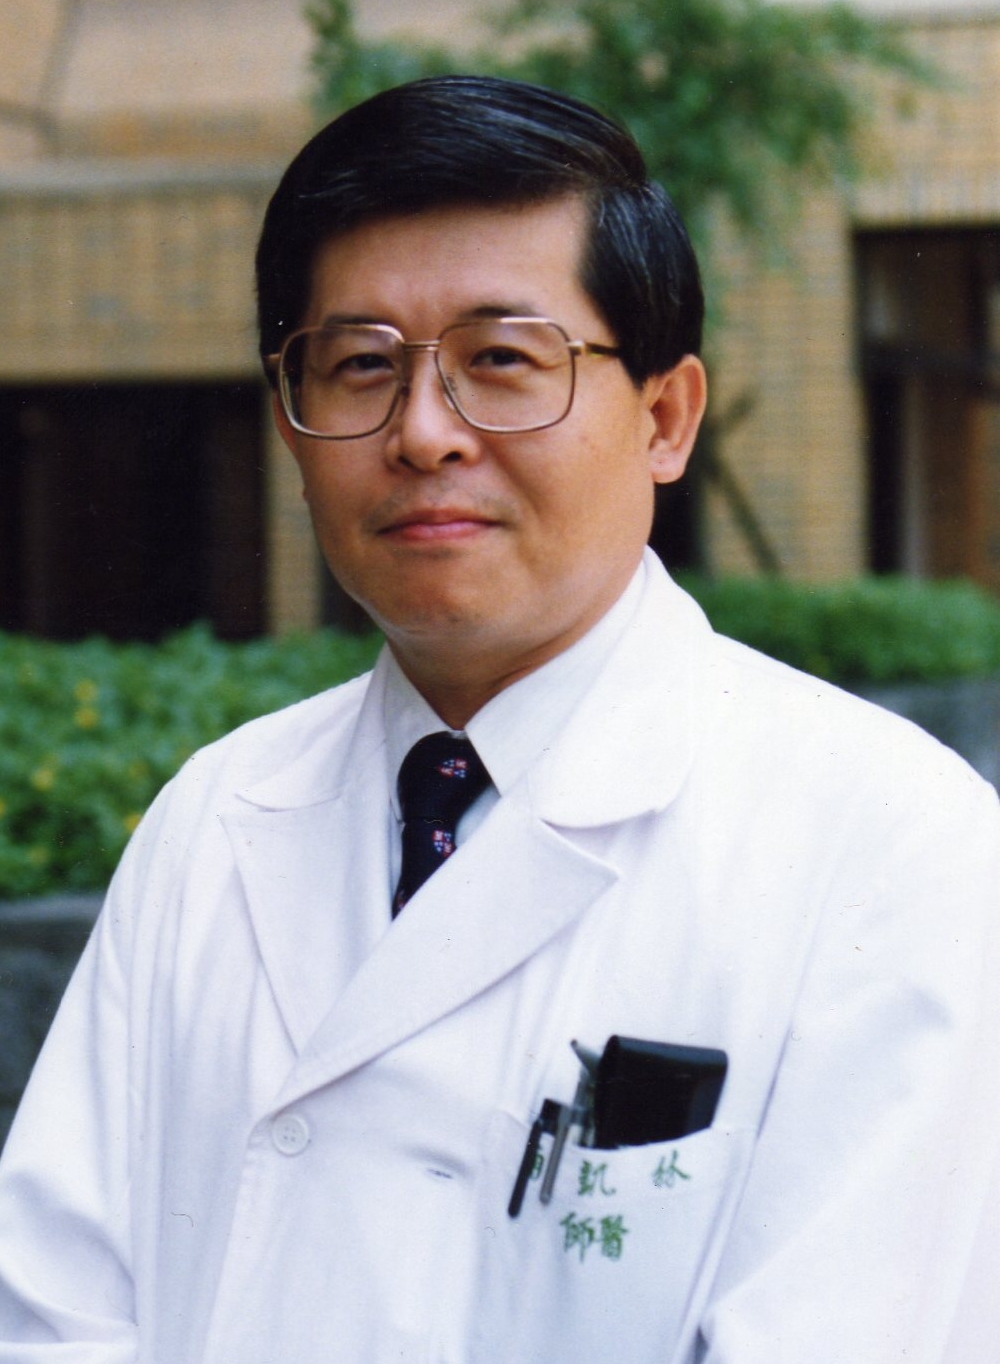 Image:Dr. Kai-Nan Lin